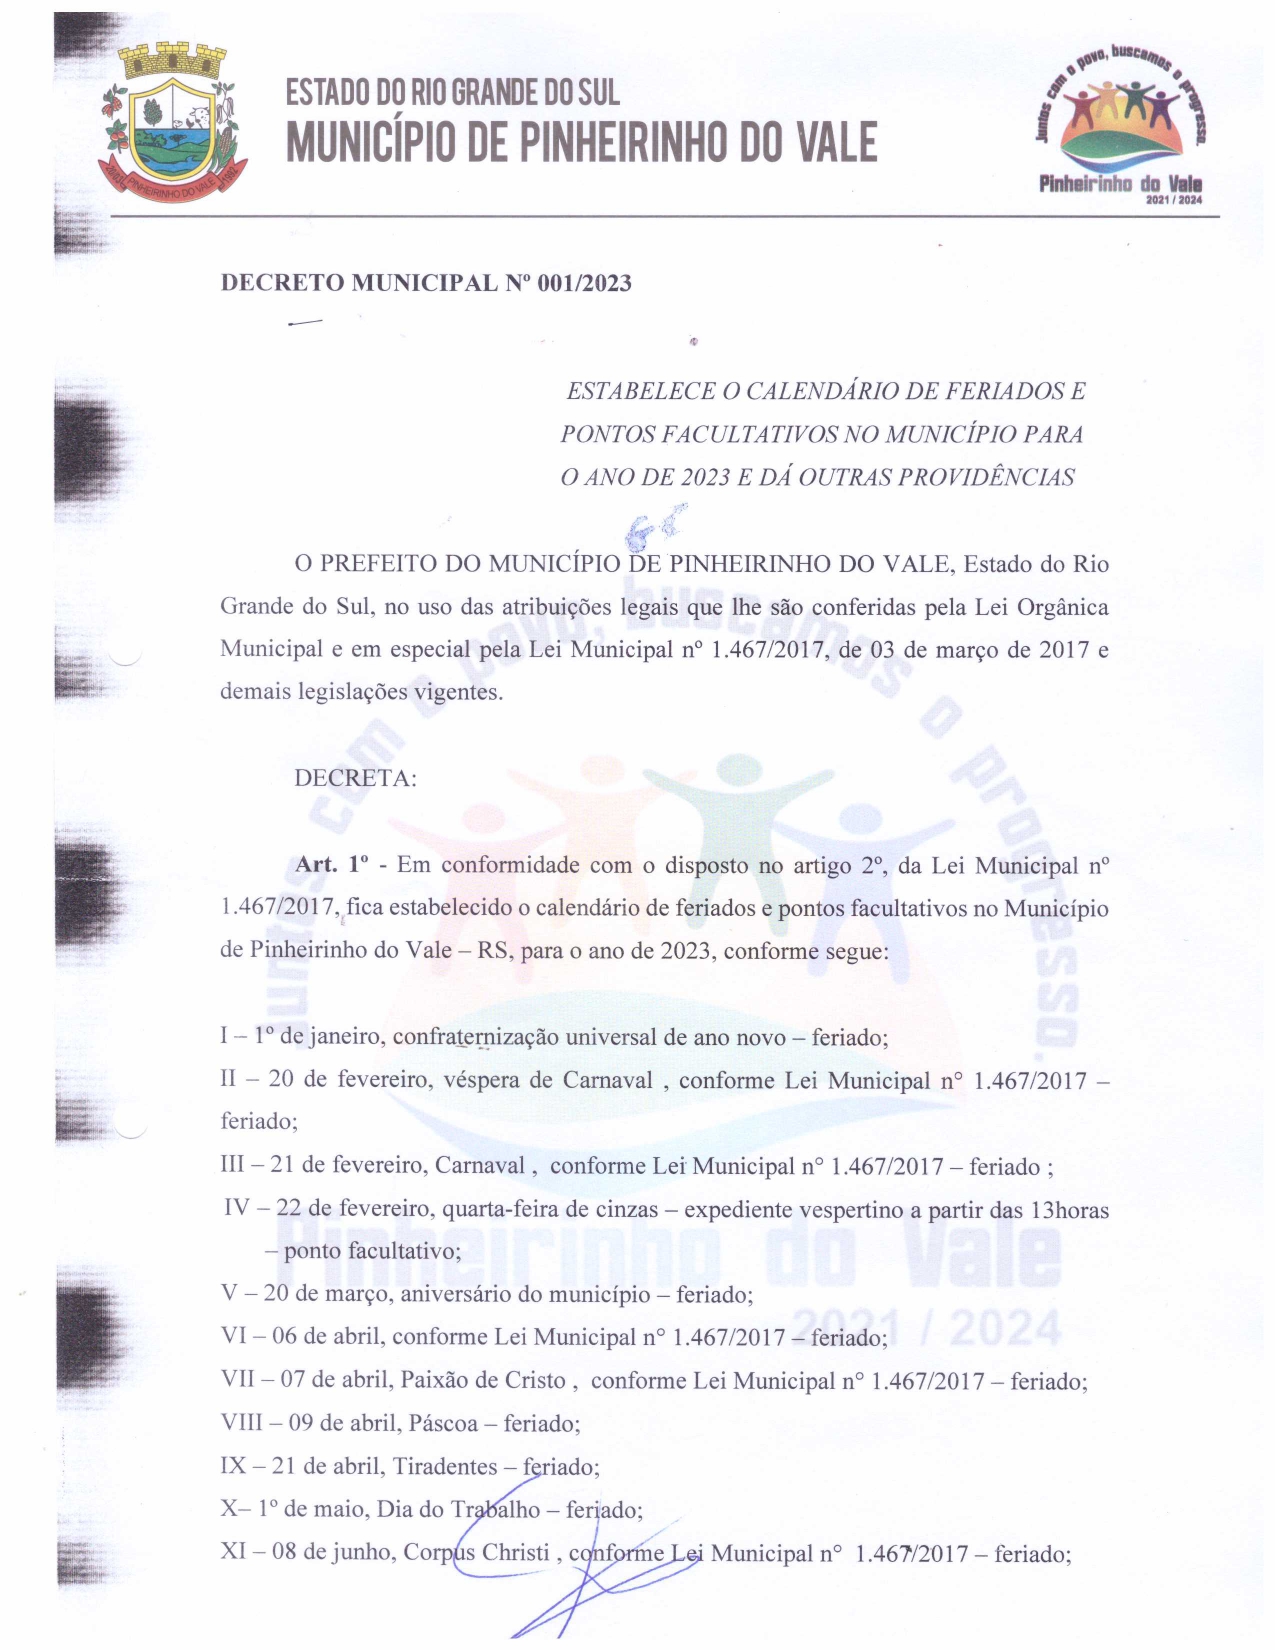 Decreto Municipal nº 0012023 1 page 0001